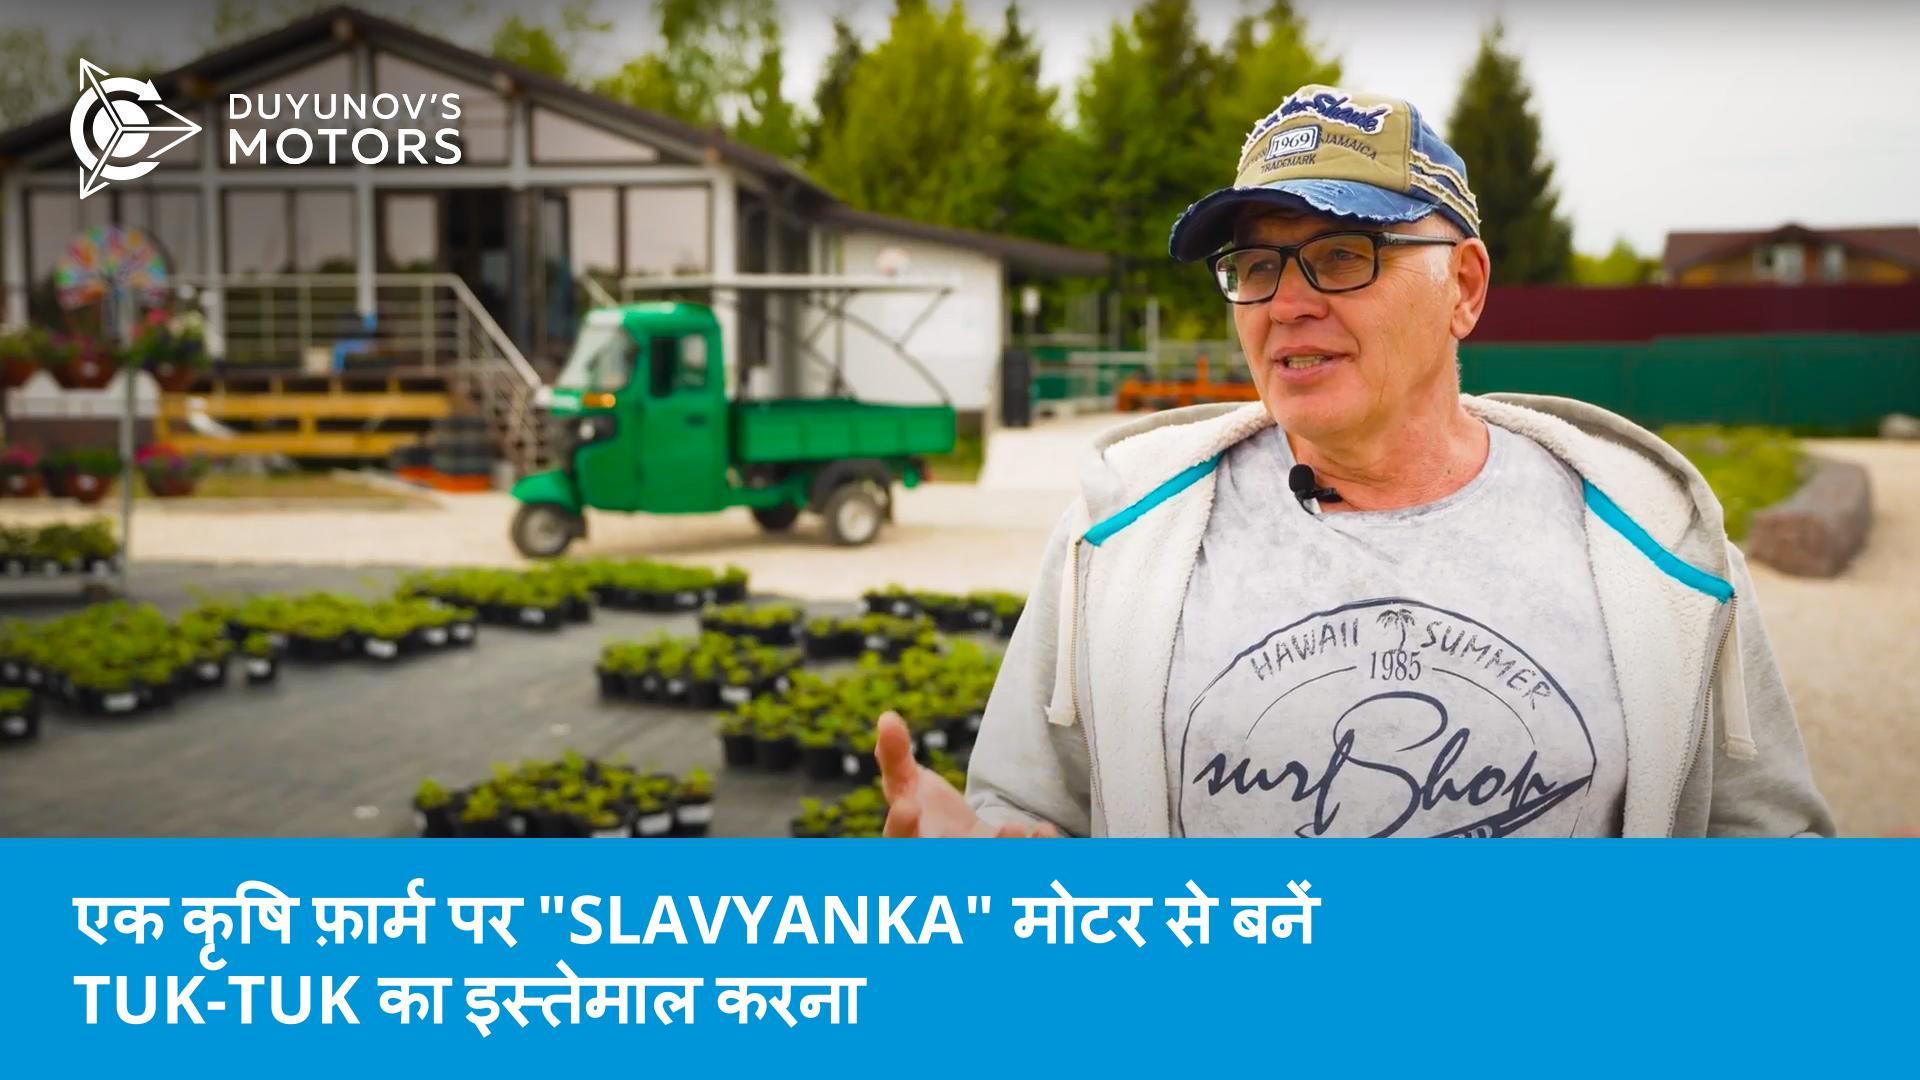 ग्रीन बिज़नेस असिस्टेंट: एक कृषि फ़ार्म पर "Slavyanka" मोटर से बनें tuk-tuk का इस्तेमाल करना